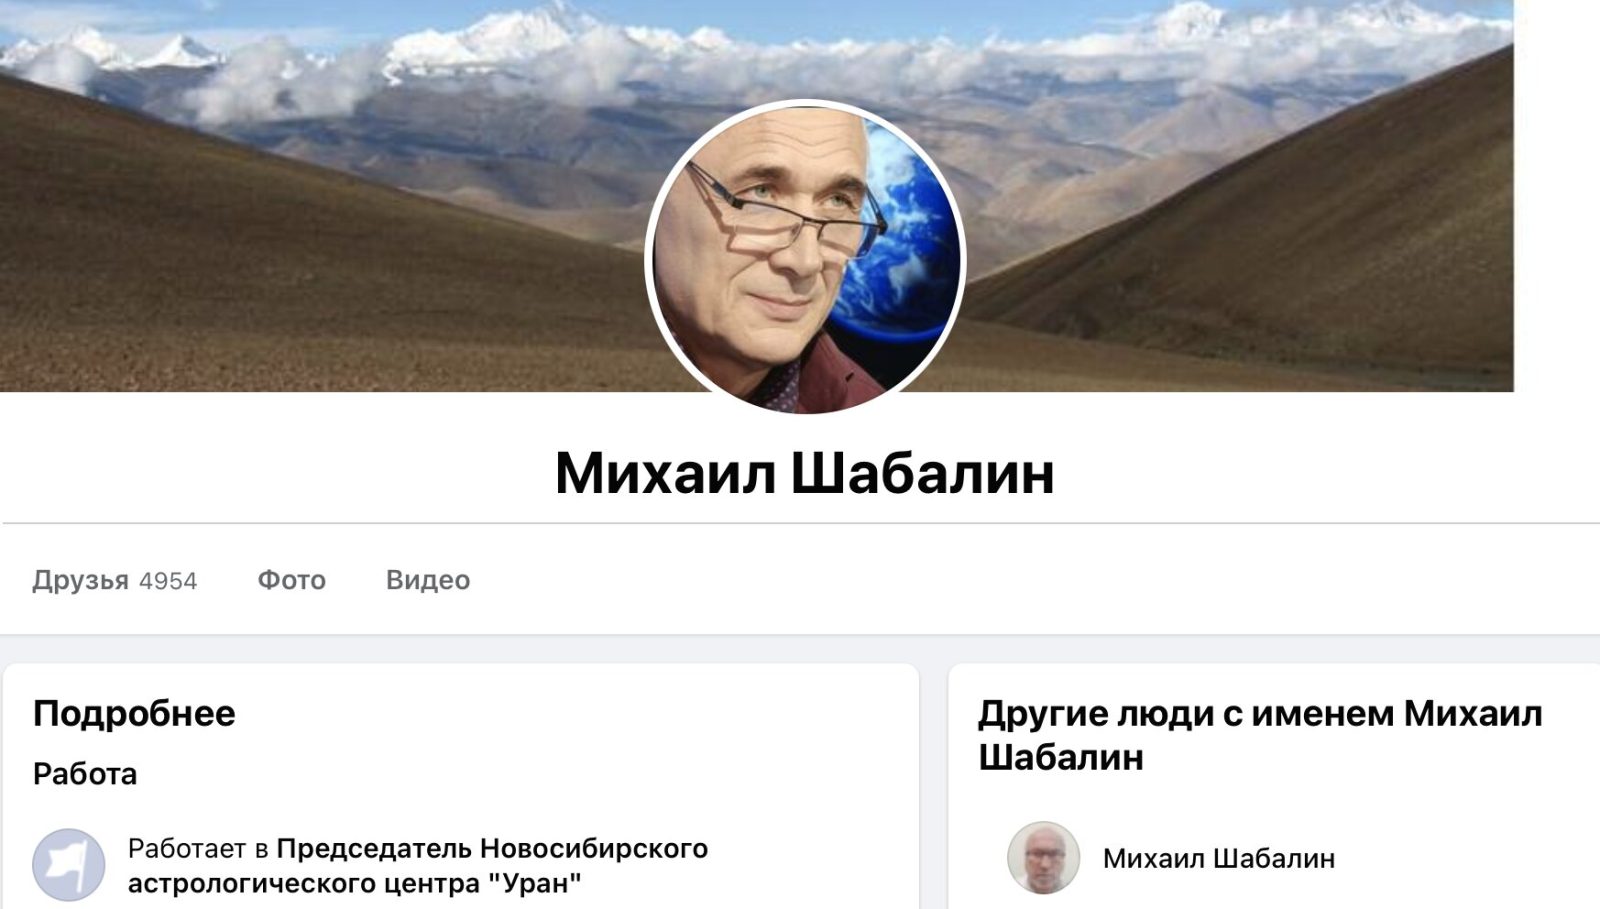 Михаил Шабалин астролог фейсбук